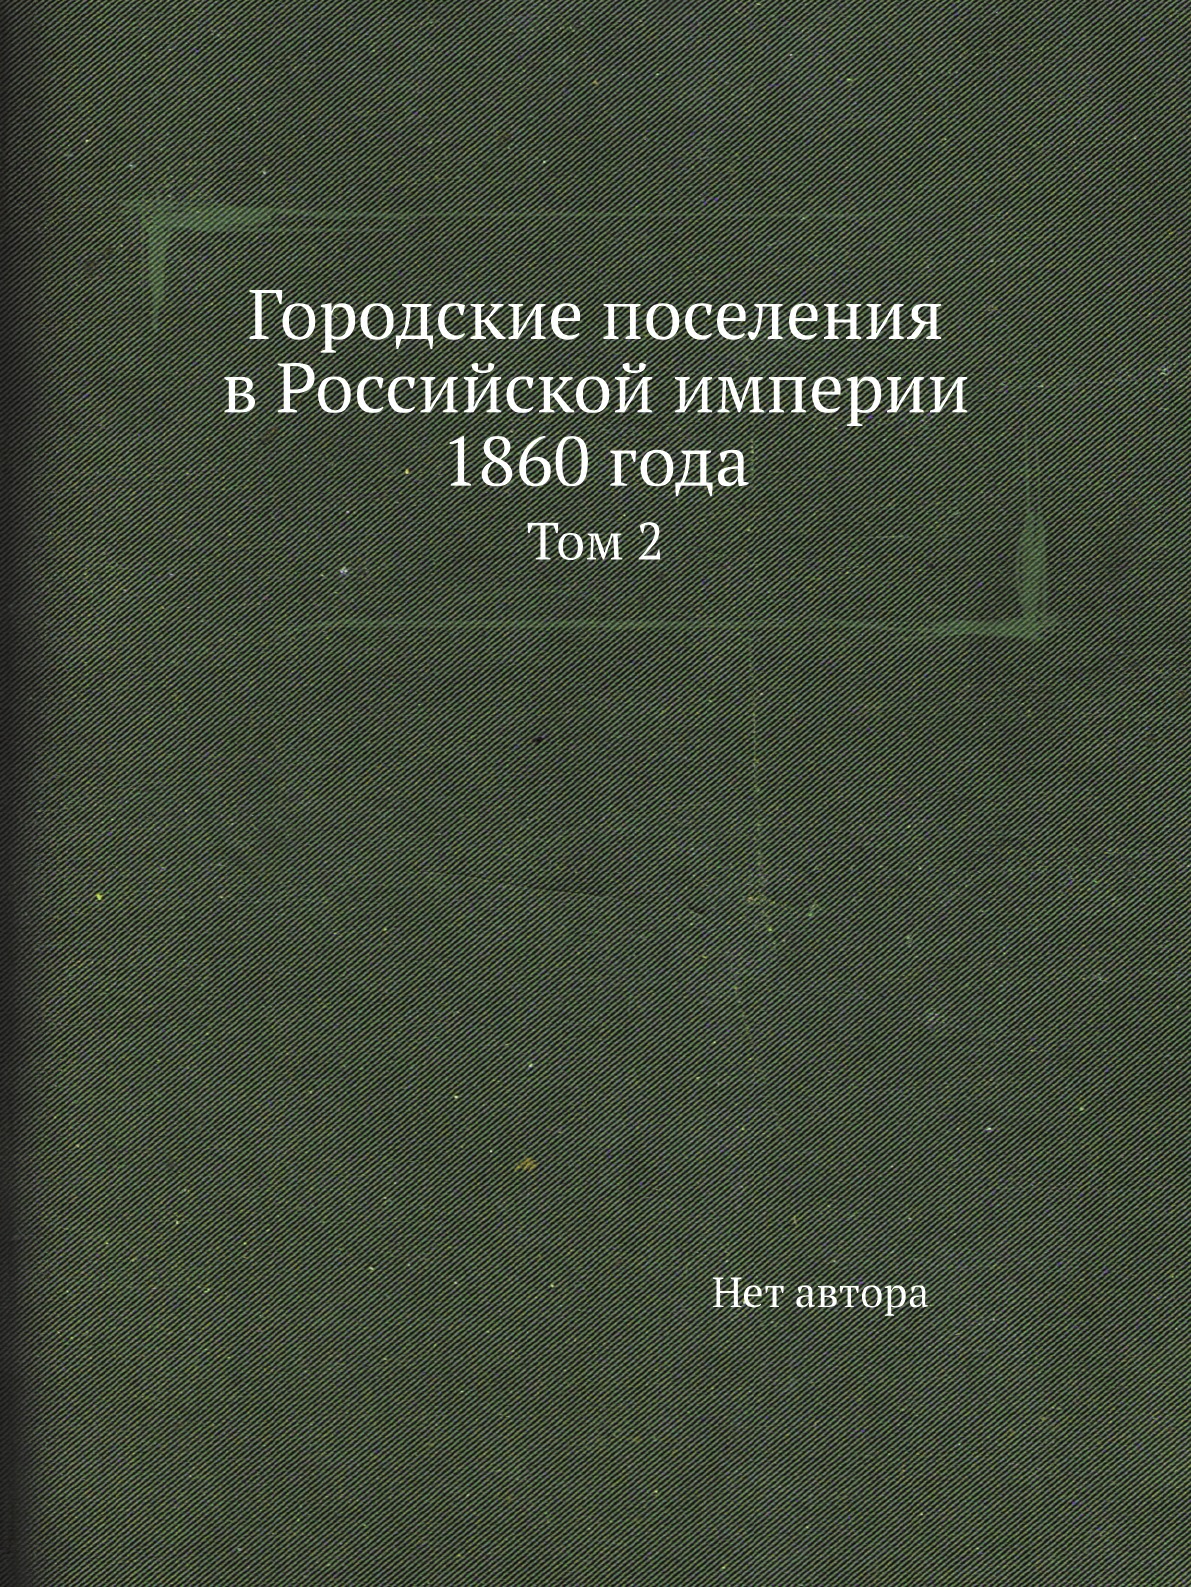 фото Книга городские поселения в российской империи 1860 года. том 2 нобель пресс